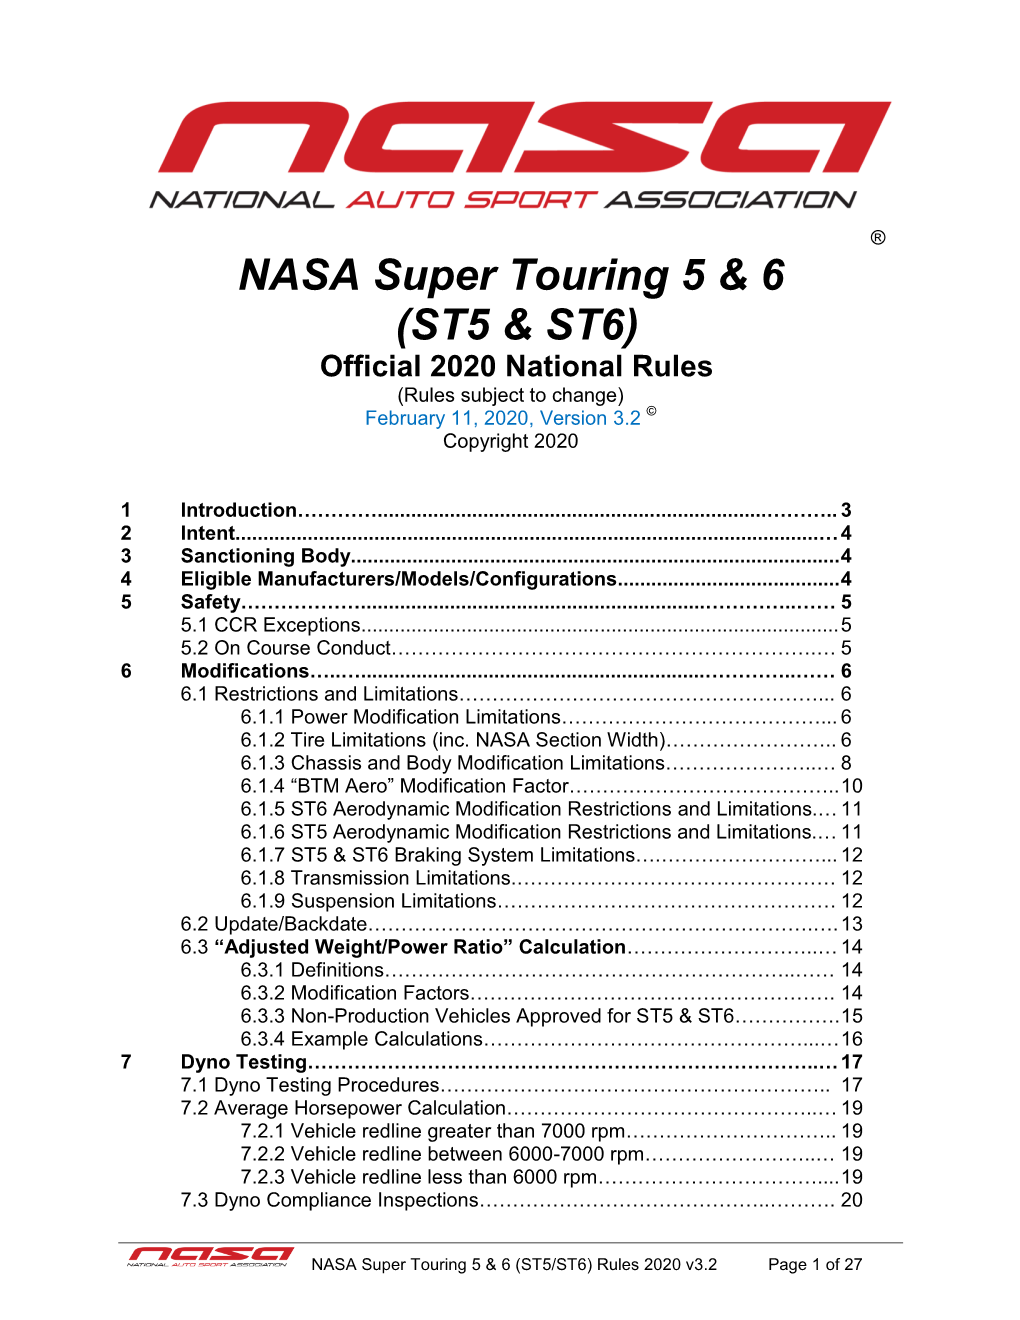 NASA Super Touring 5 & 6 (ST5 & ST6)